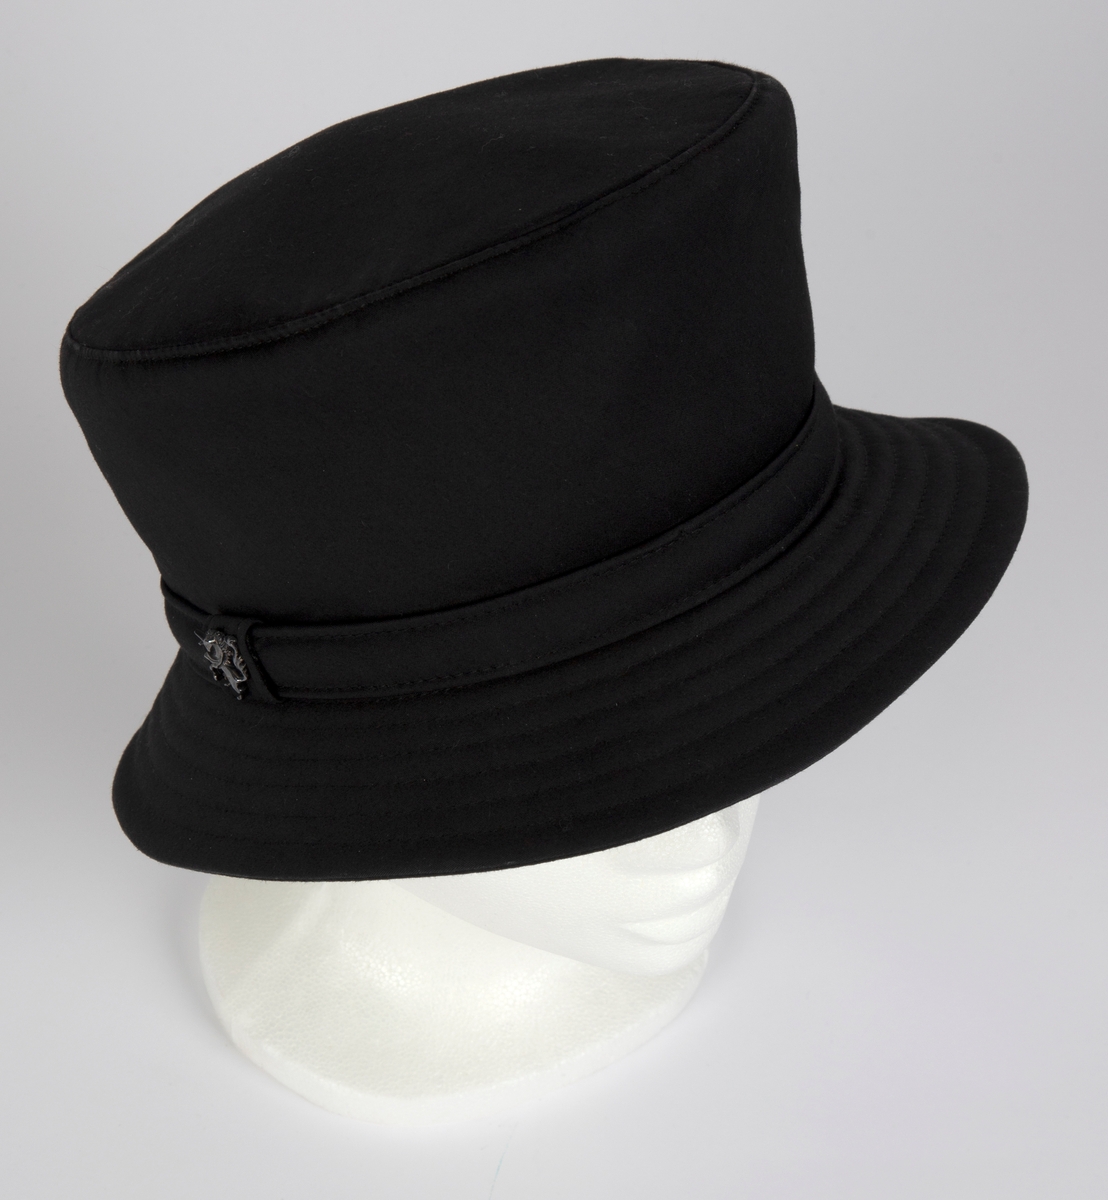 Relativt høy hatt av kraftig, kypertvevd, mercerisert bomull. Flosshatt-type, med tilnærmet sylindrisk pull, lett utsvinget øverst, noe høyere foran og med flatt, sirkulært toppstykke. Smal brem, som skråner nedover, stukket med tettstilte, parallelle sømmer. Pull og brem har søm midt bak. Smal, kantstukket hattebånd, med skjult skjøt under en "løkke" av hattebåndet, midt på høyre side. Denne "løkken" er dekorert med designerens logo, en steilende enhjørning i antrasittgrått, blankt metallrelieff. Innvendig fôret med marineblått, blankt silkestoff, foldelagt inn mot et sirkelformet midtparti, avgrenset mot foldene med en smal, gyllen silkerulour. Bredt svettebånd i kraftig bomullsrips. Hatten har også mellomfôr i pullen, antagelig med et tynt lag Polyester.